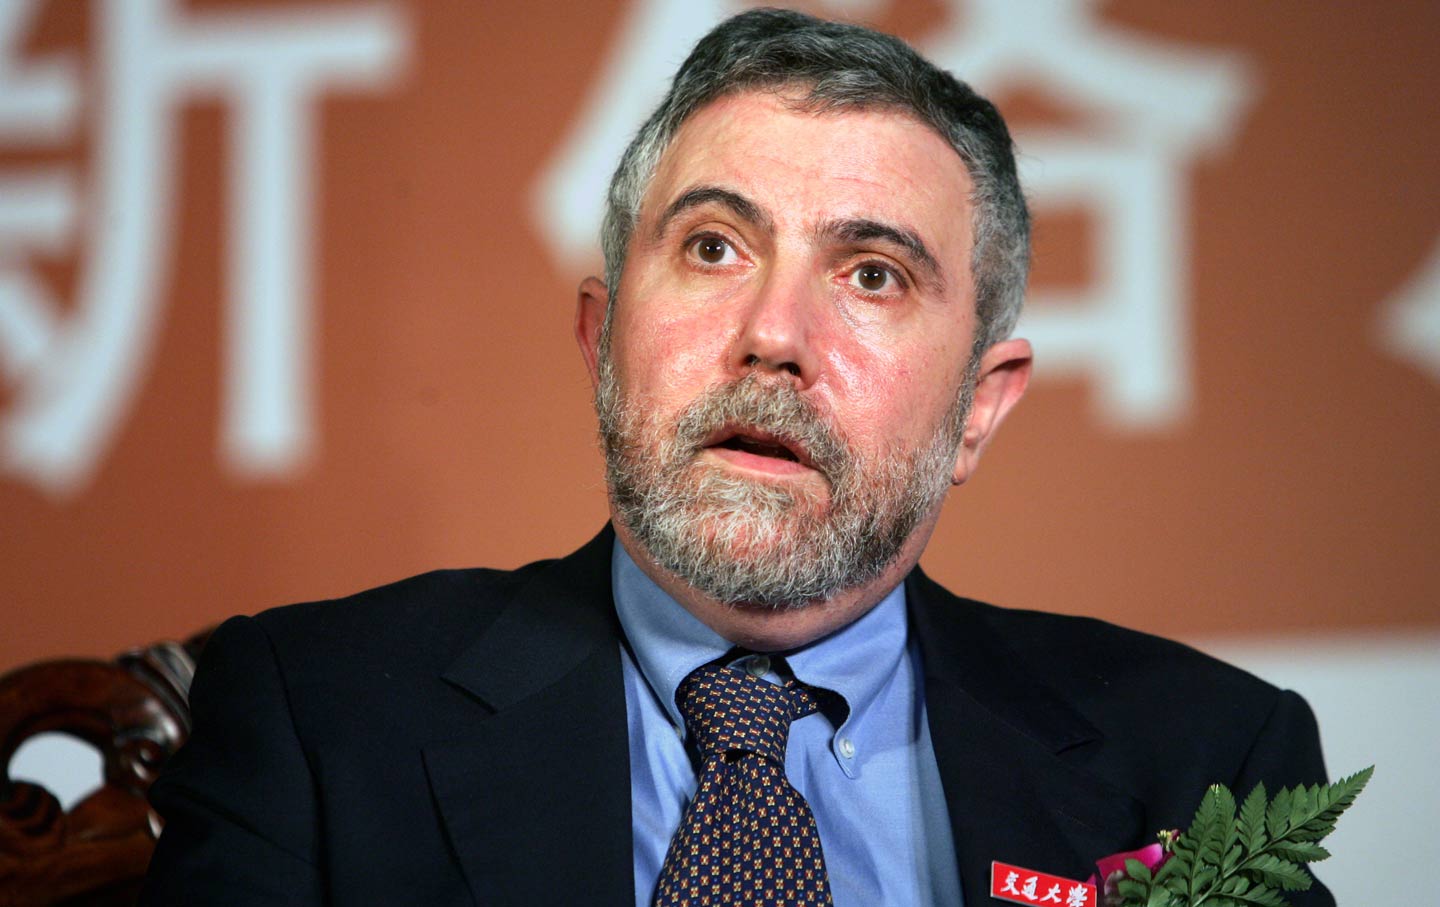 Paul Krugman Raises the White Flag on Trade